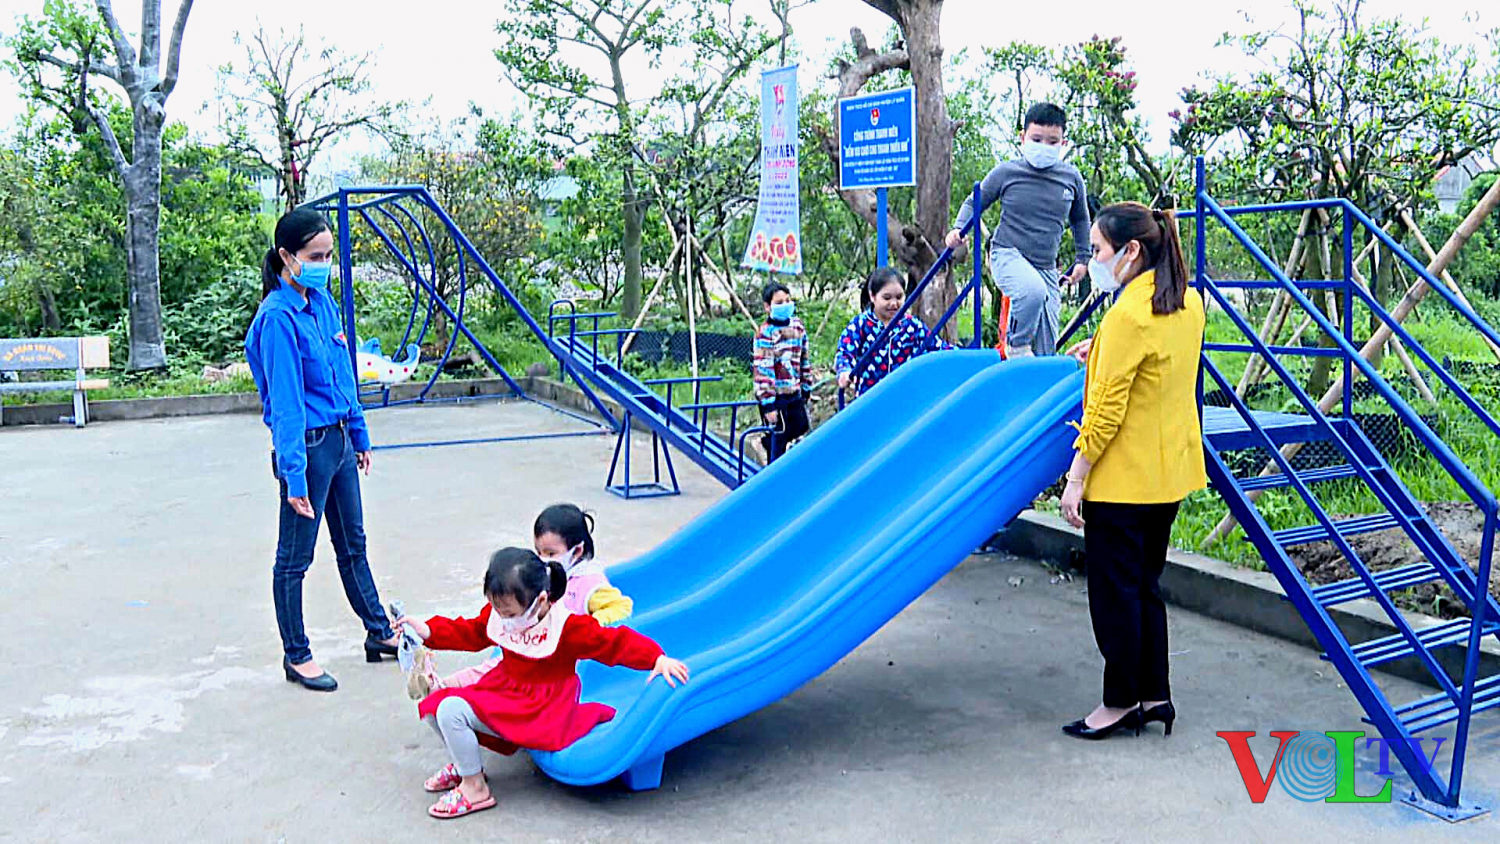 Điểm vui chơi cho trẻ em  tại thôn Hạ Muồng Cao xã Trần Hưng Đạo.png